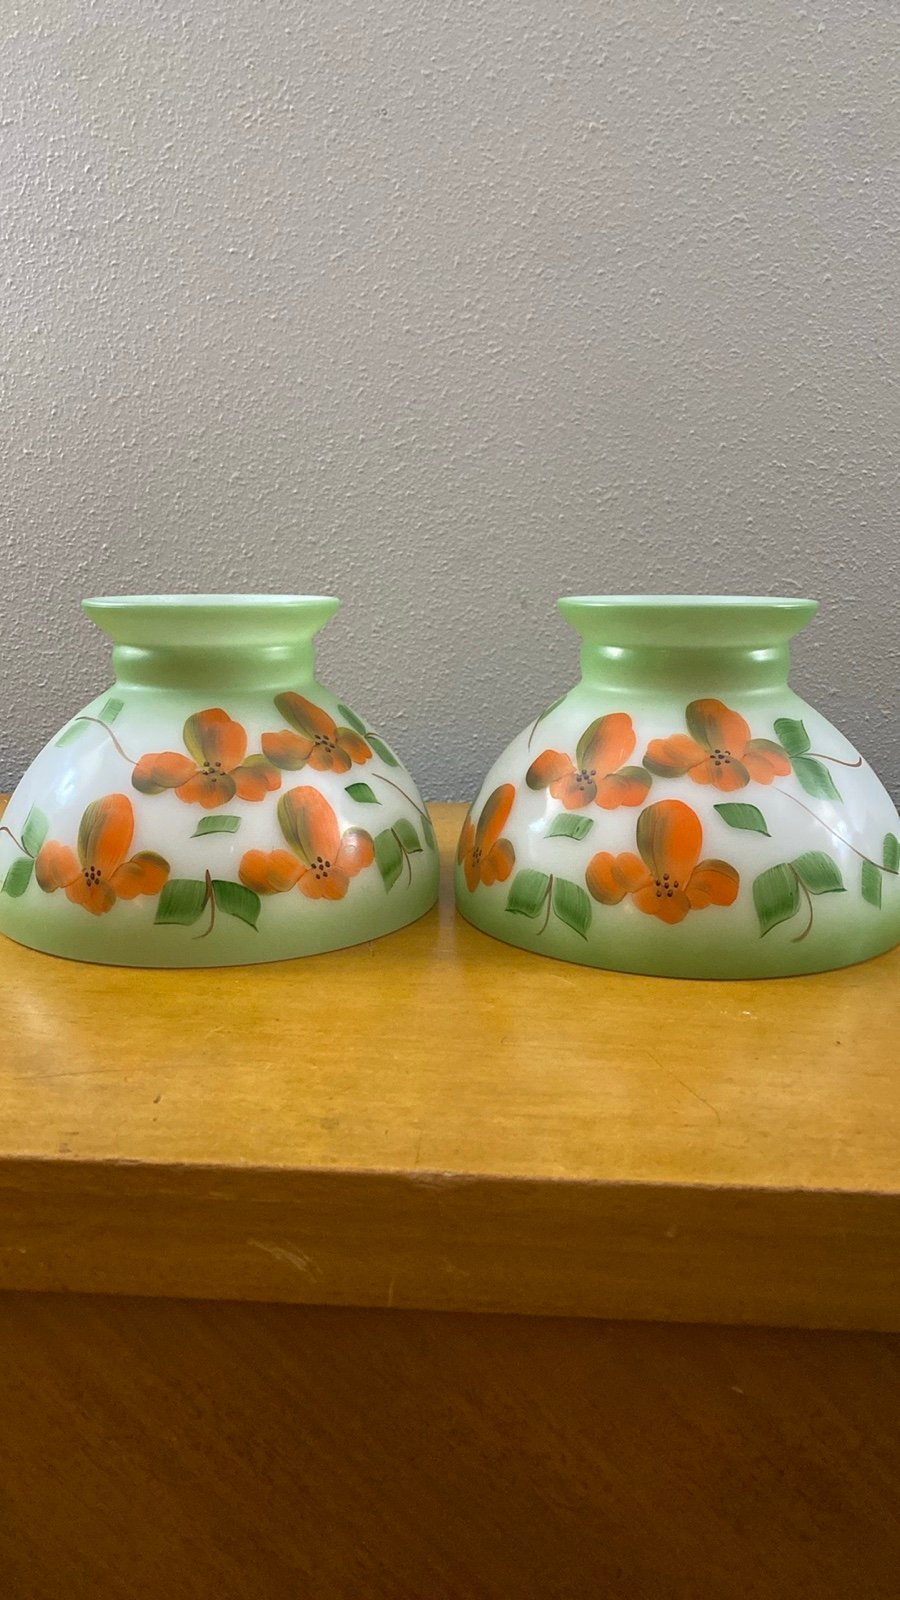 Set of 2 Vintage Hurricane Lamp Shade Milk Glass Hand Painted Orange Flowers 3Y6I8Tp6n